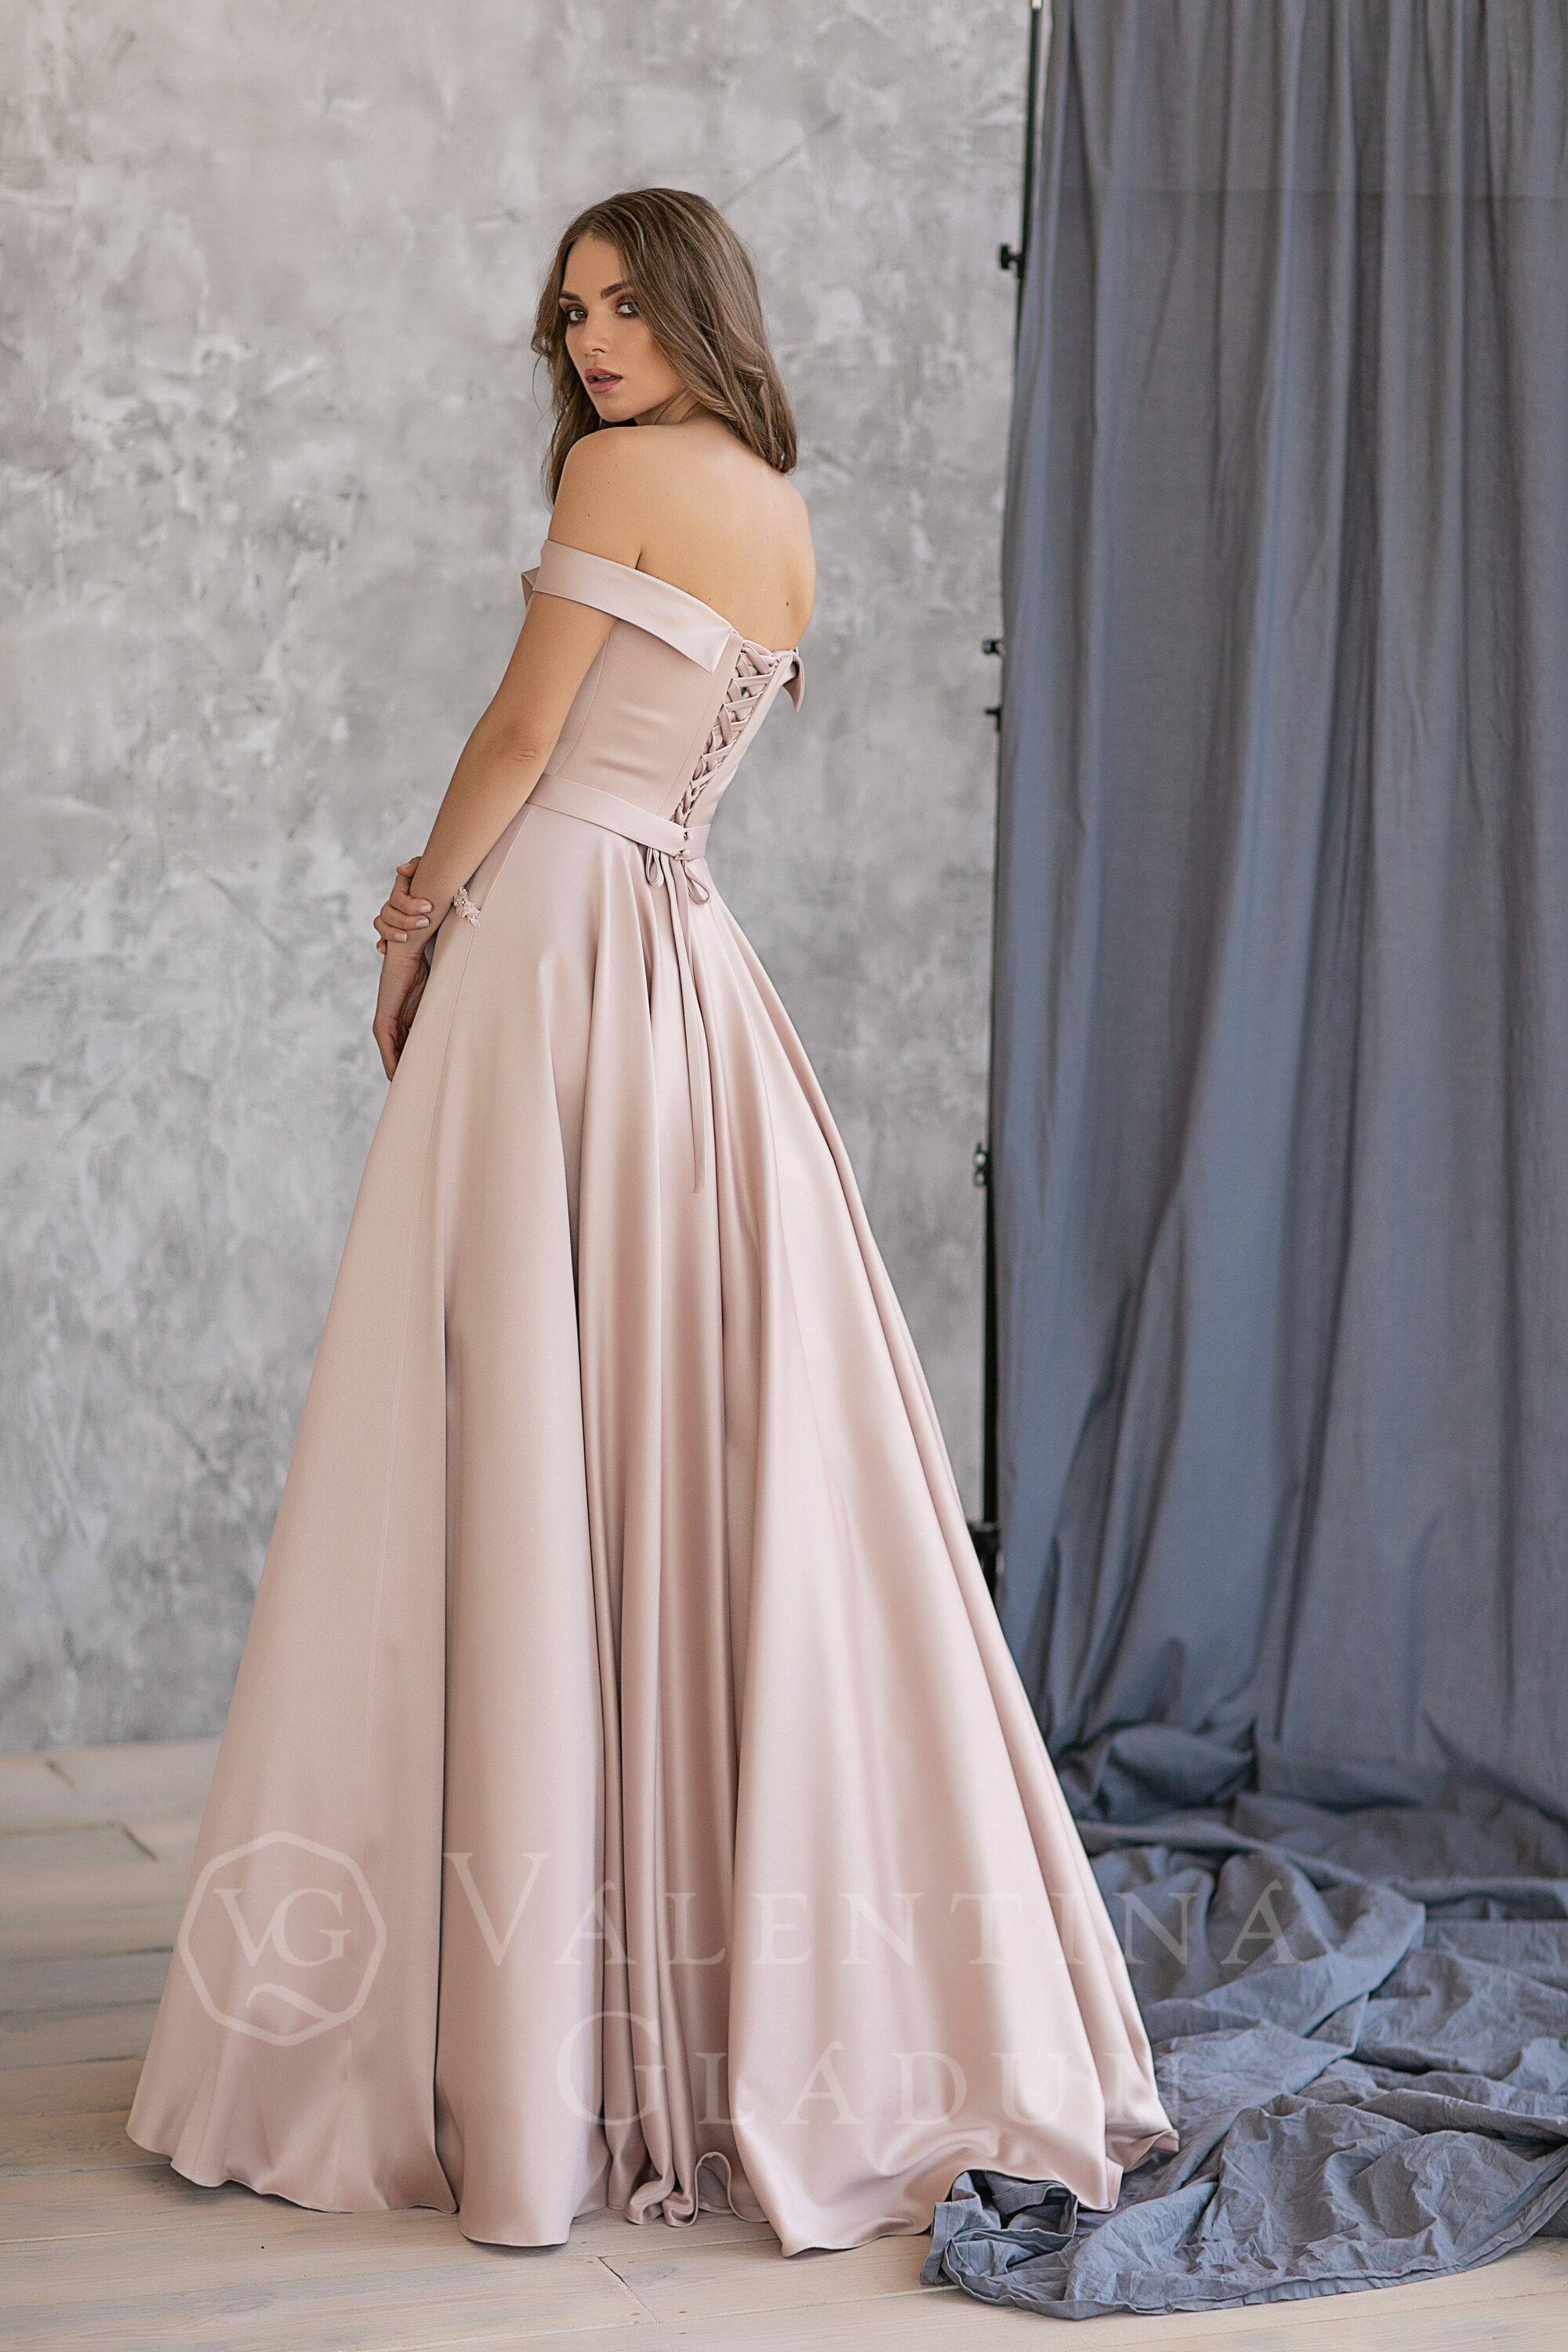 Очень красивое платье с оригинальным корсетом Арт Деко от Валентины Гладун